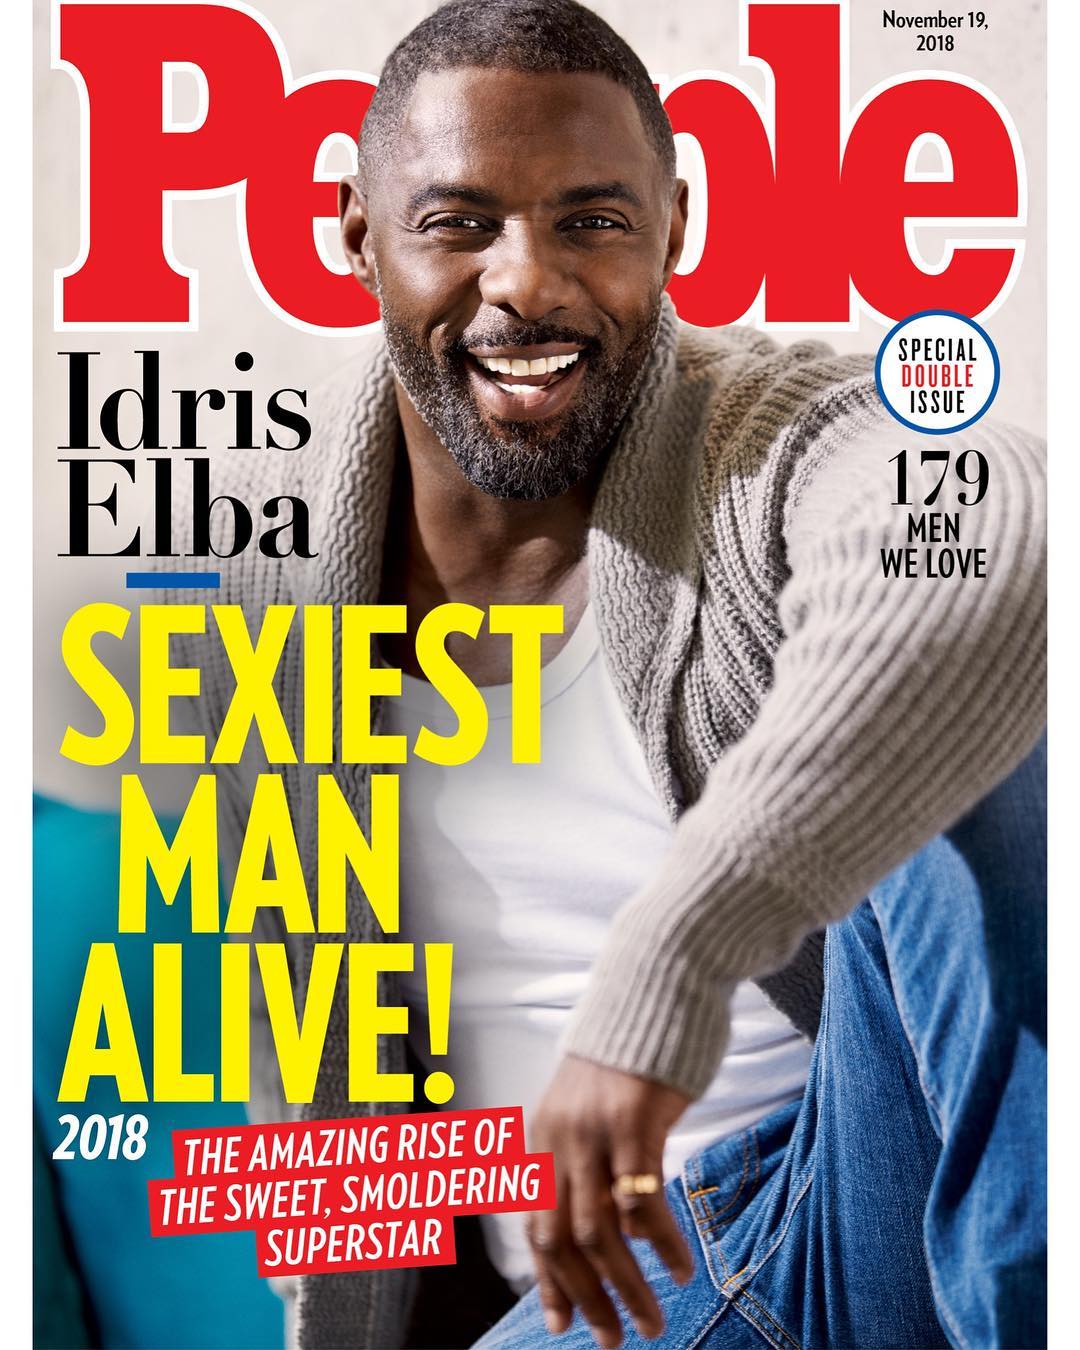 Vítězem roku 2018 se stal britský herec Idris Elba.